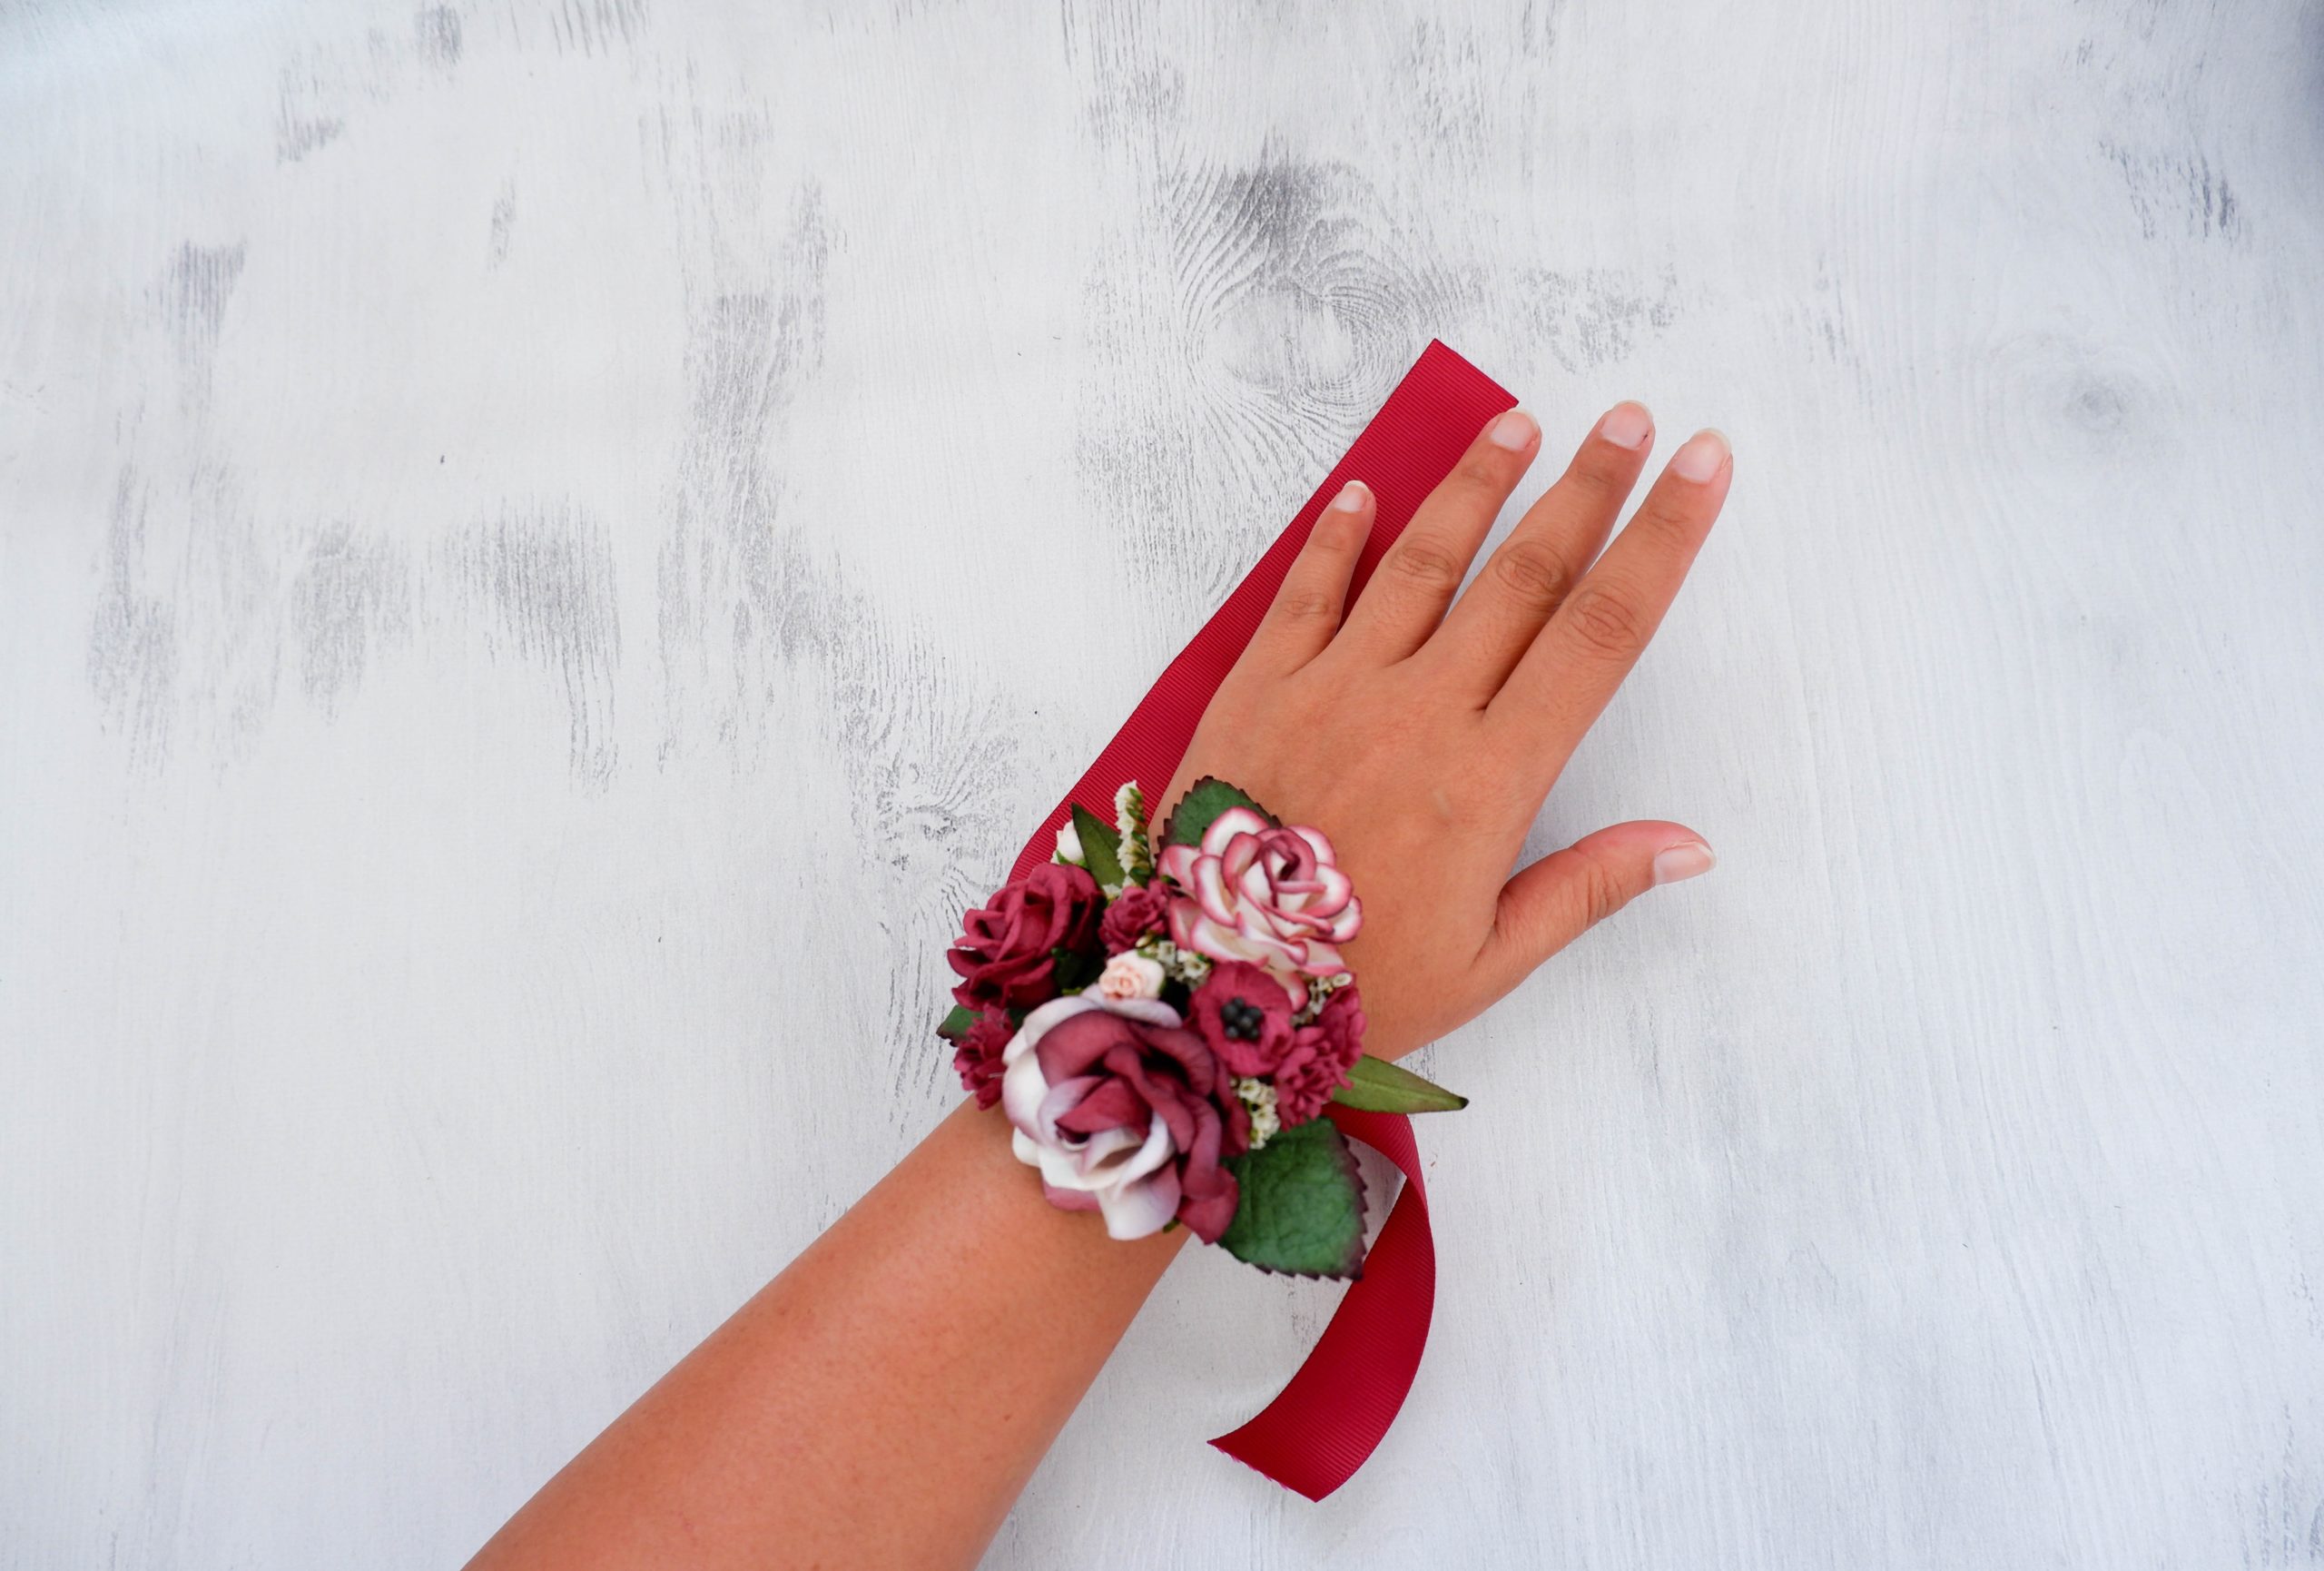 Rose Artifical Flowers Wrist Corsage Lace Sash Bridesmaid Pink Accessories  bracelet demoiselle d honneur mariage - AliExpress